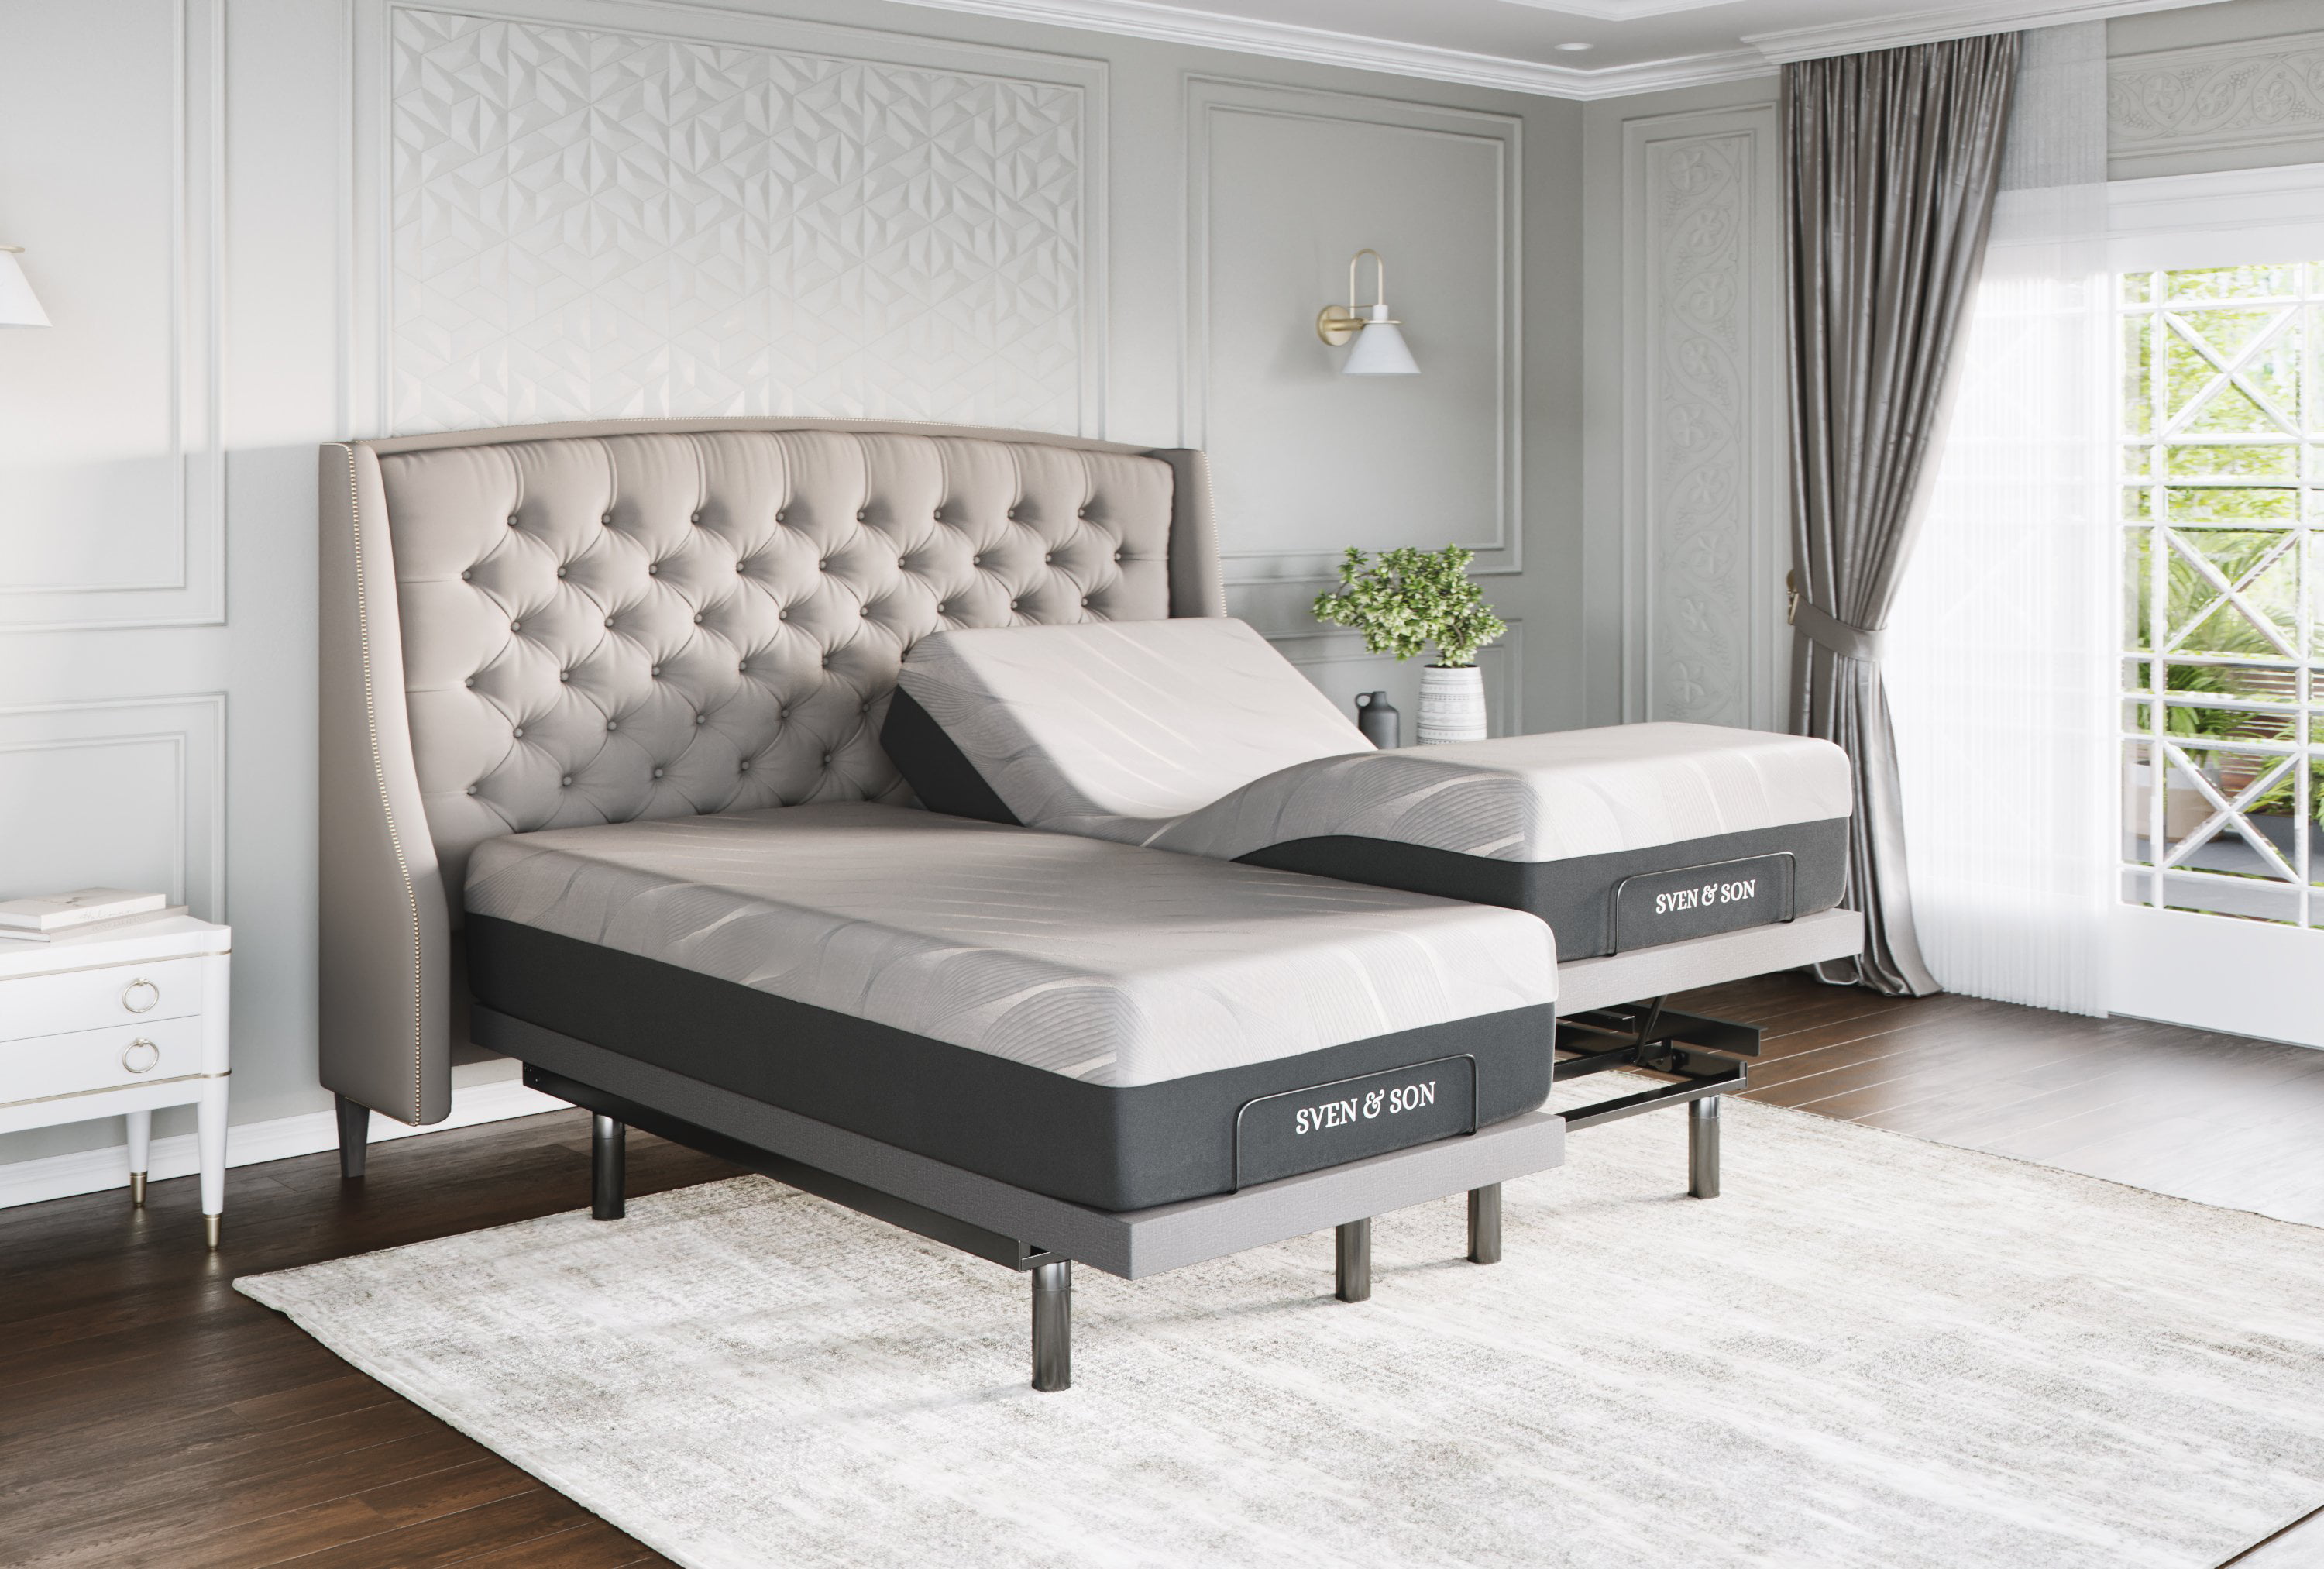 Sven Son Split King Adjustable Bed, King Size Bed Split Adjustable Baseboard